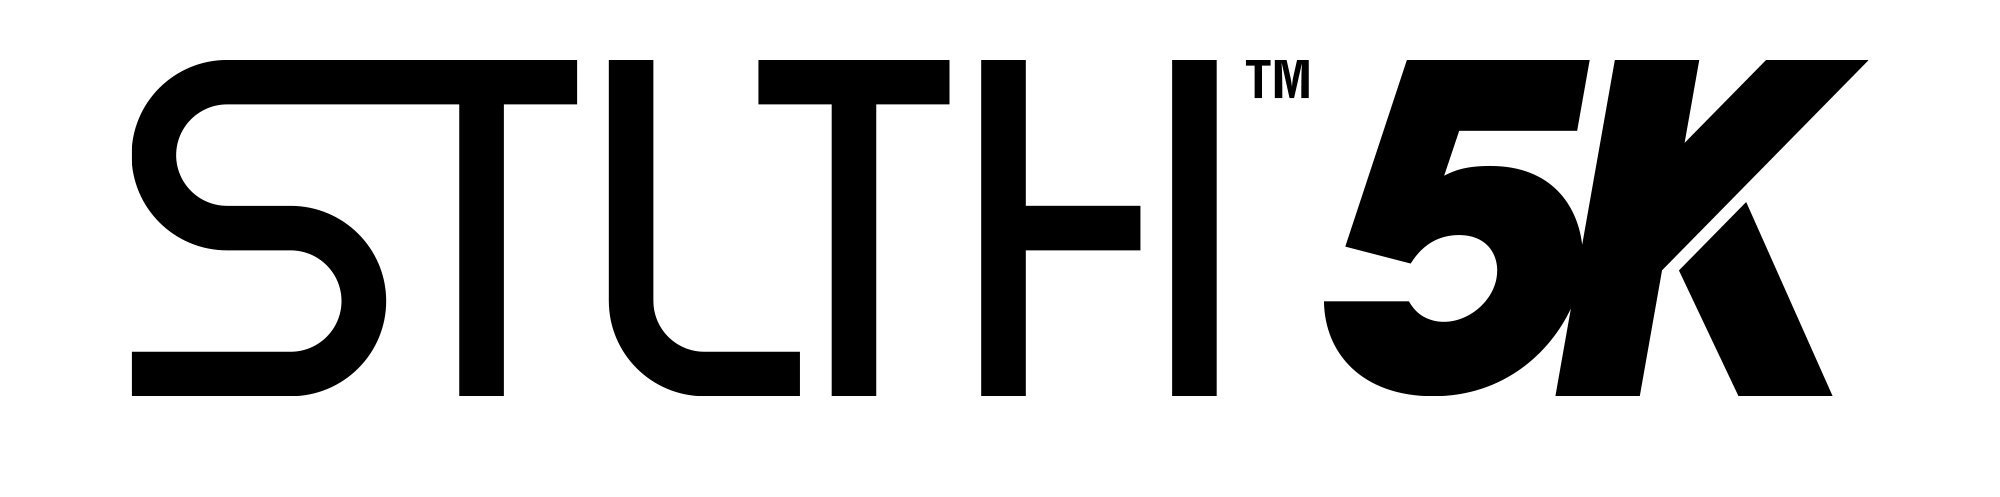 STLTH_5K_Logo2